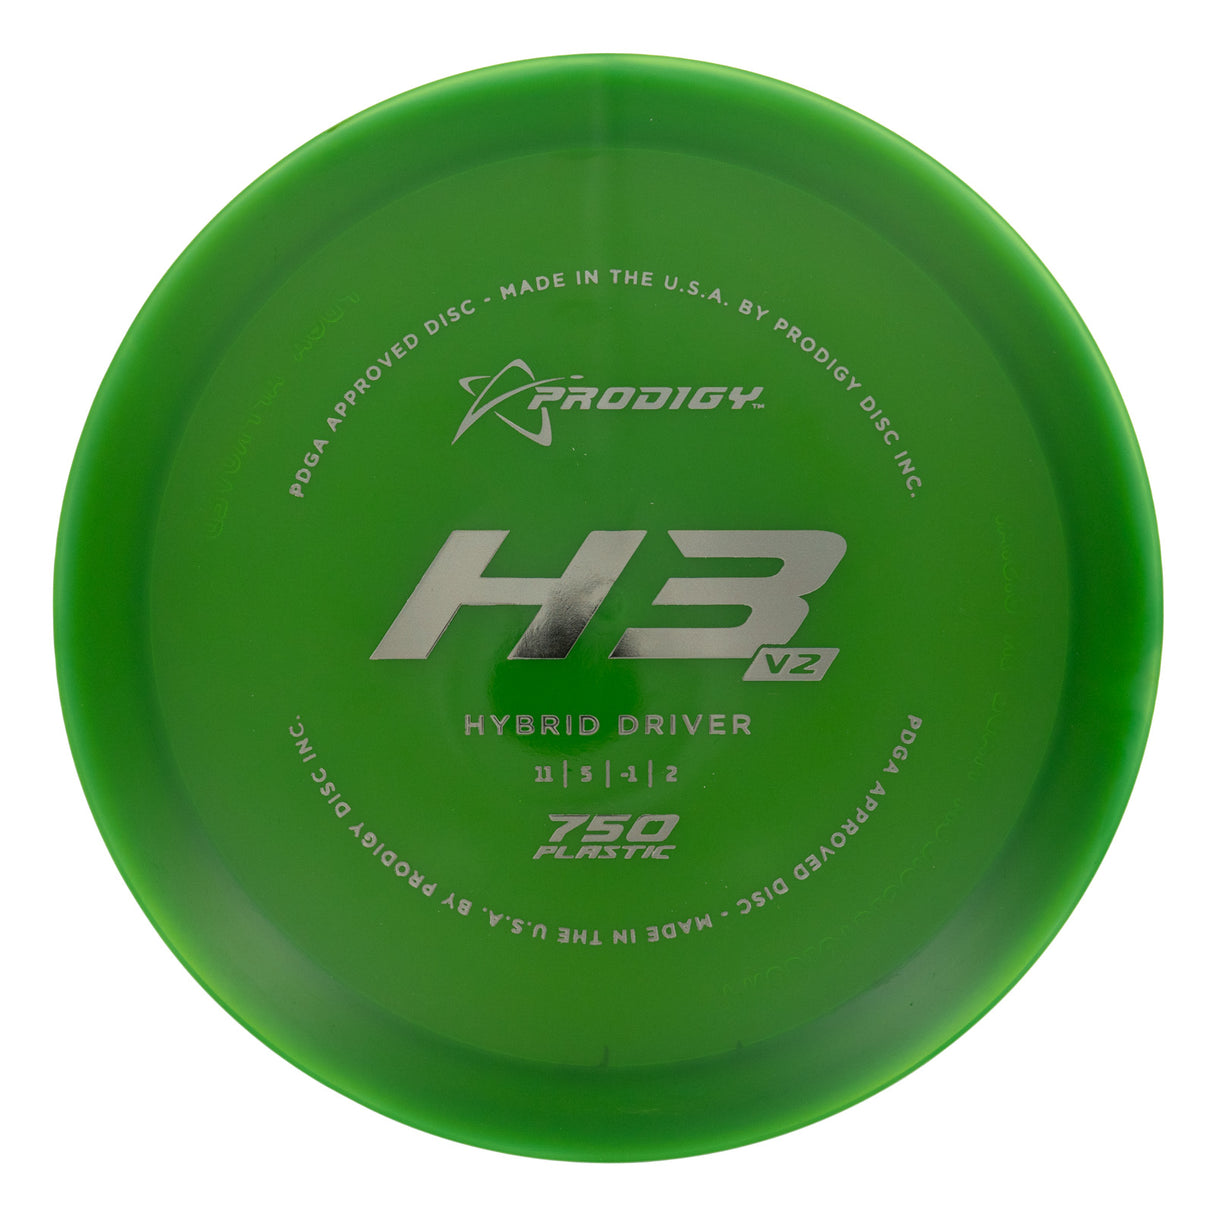 Prodigy H3 V2 - 750 175g | Style 0003